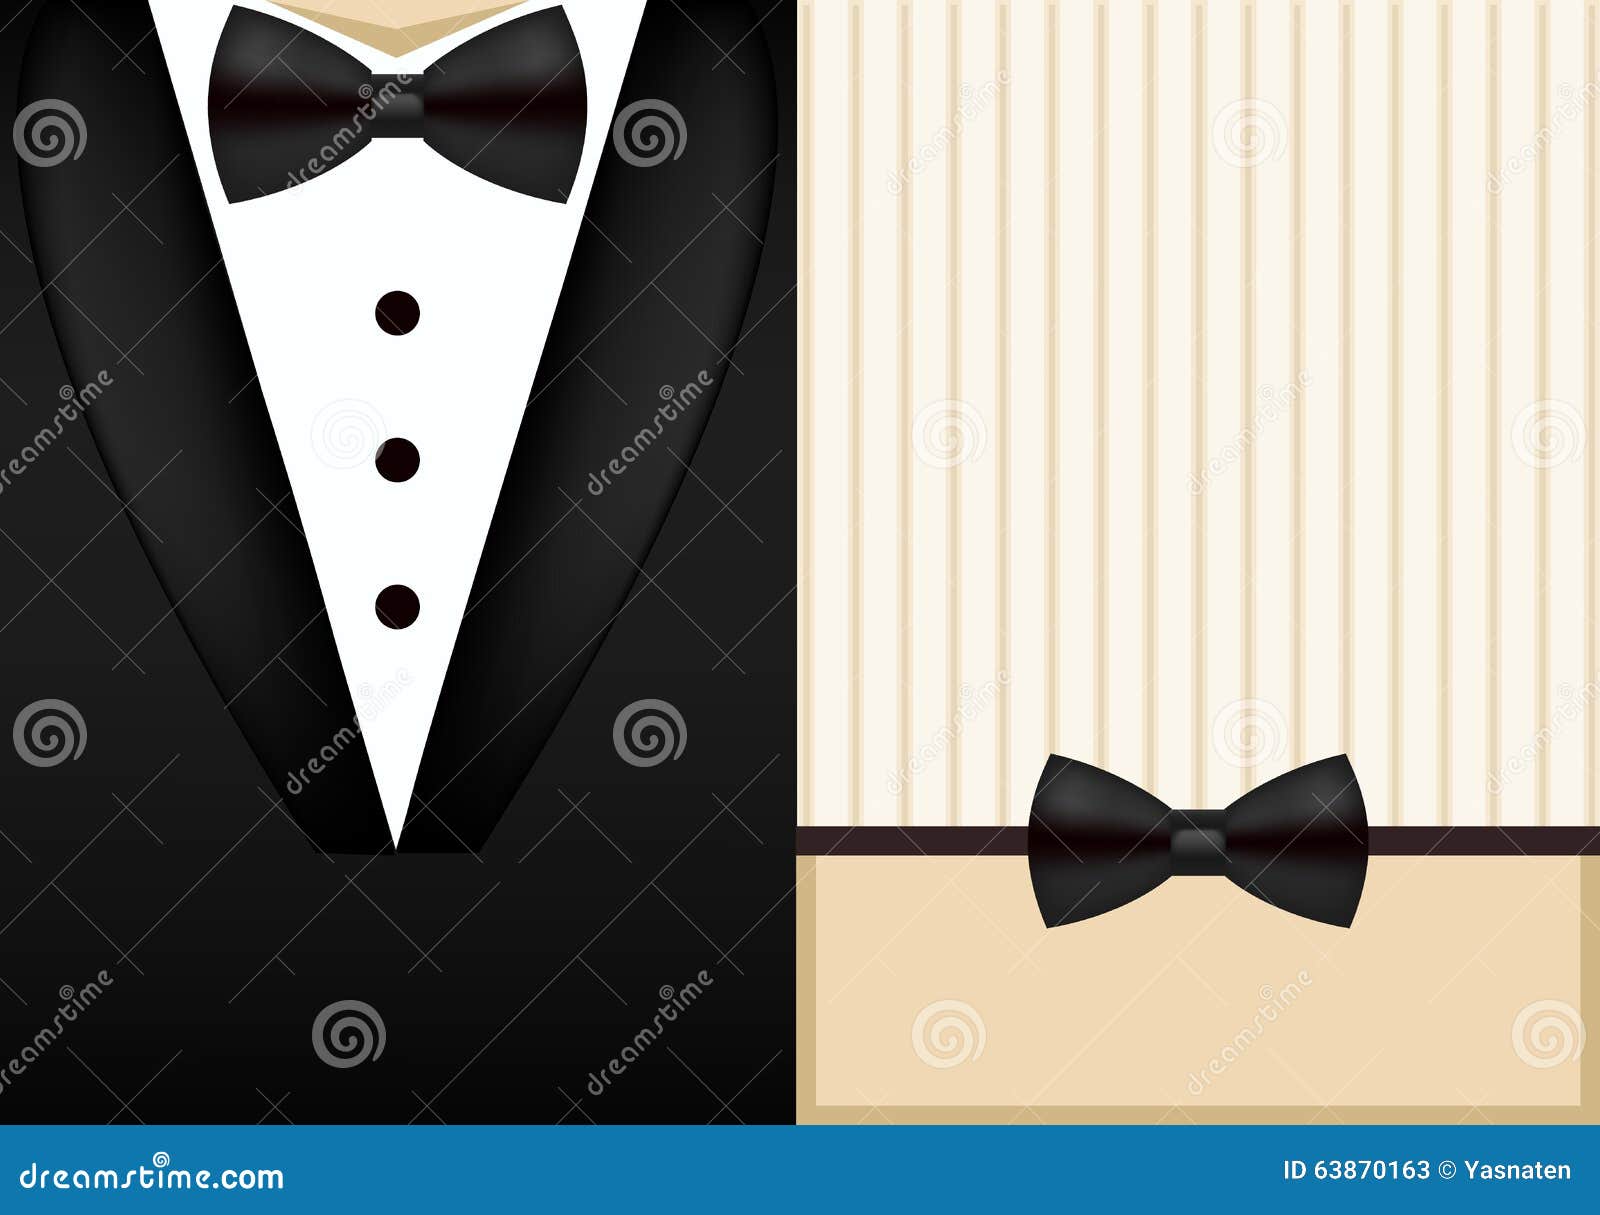 Vector Bow Tie Tuxedo Invitation Design Template  Stock 